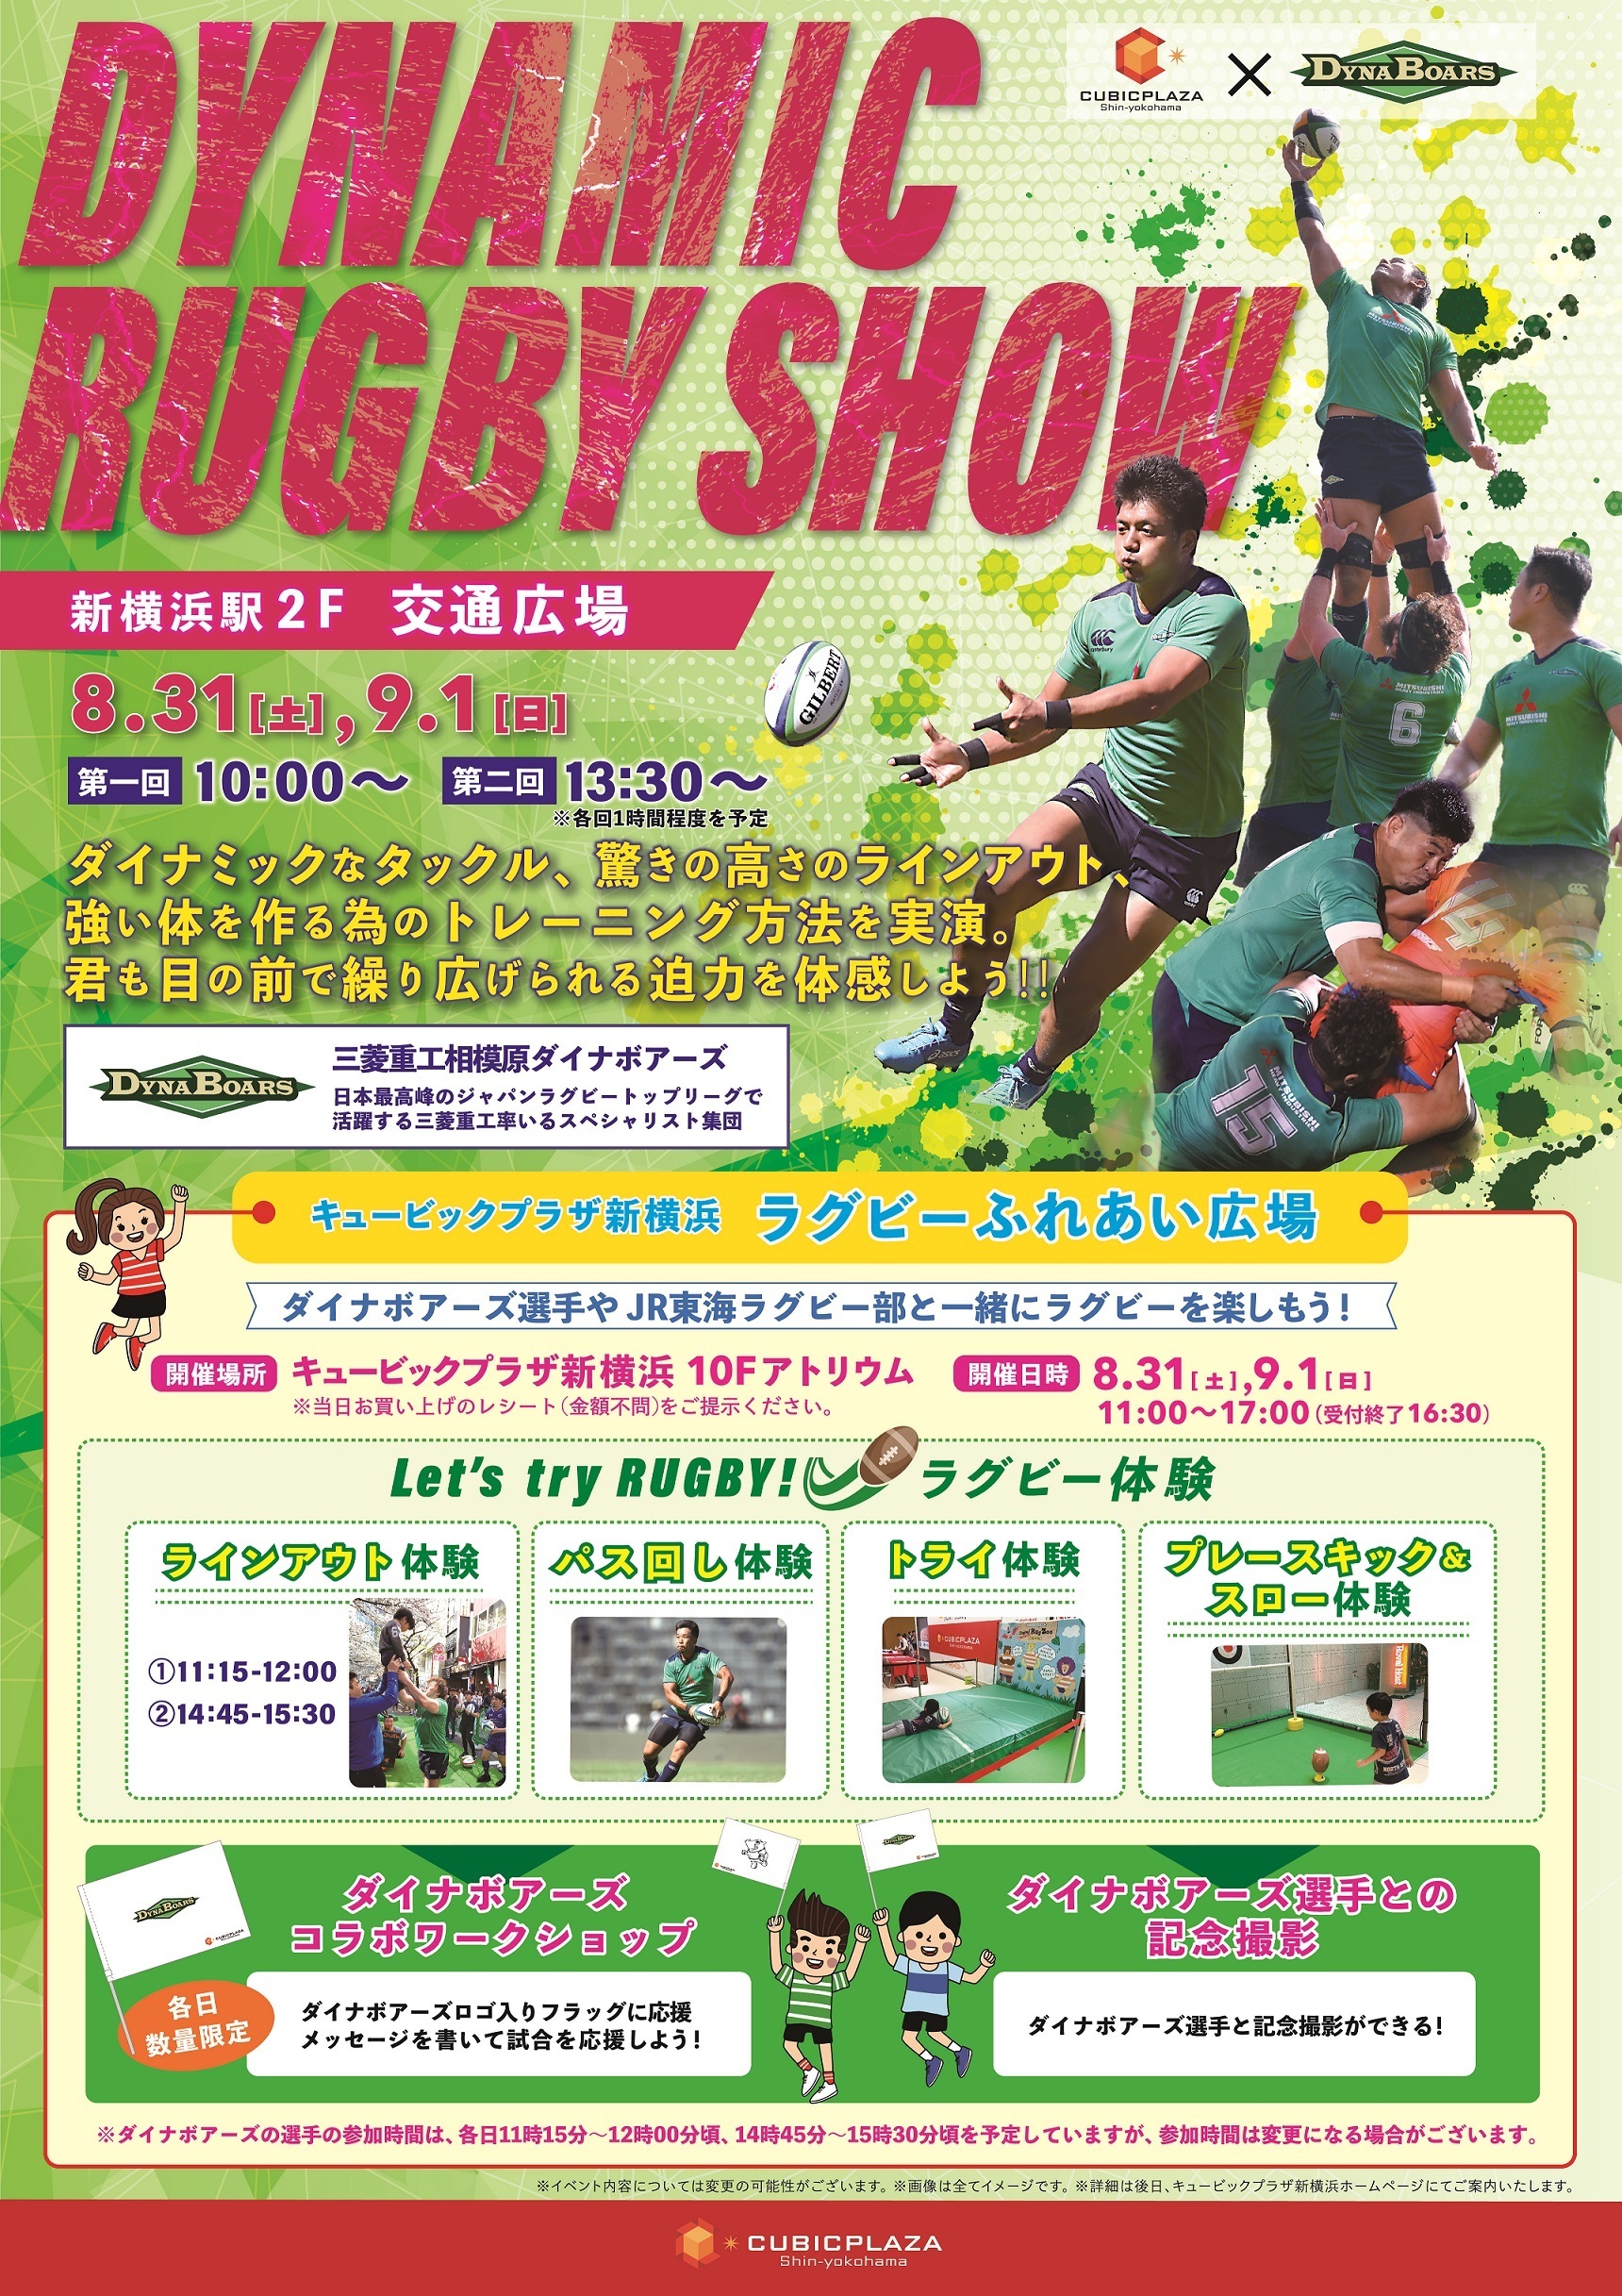 「キュービックプラザ新横浜」
ラグビー体感イベントの開催について